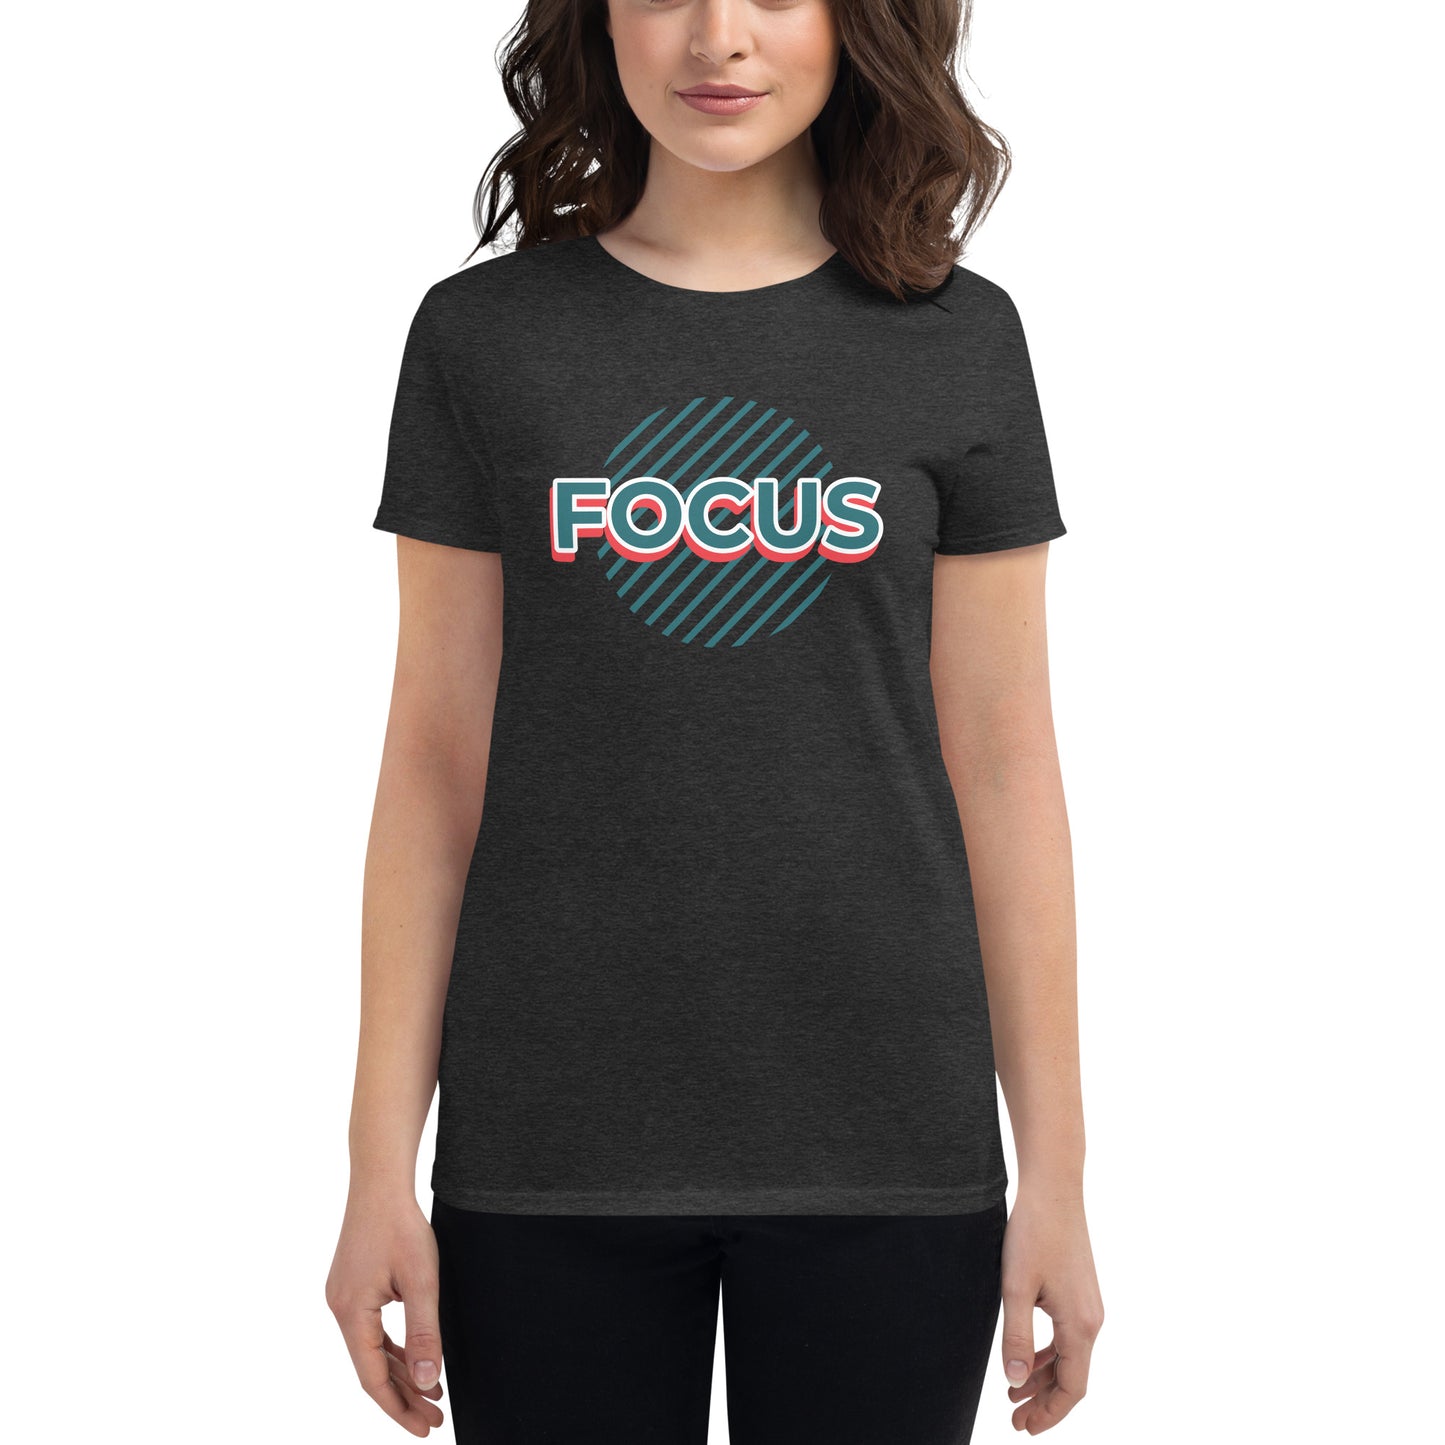 Focus T-Shirt Women